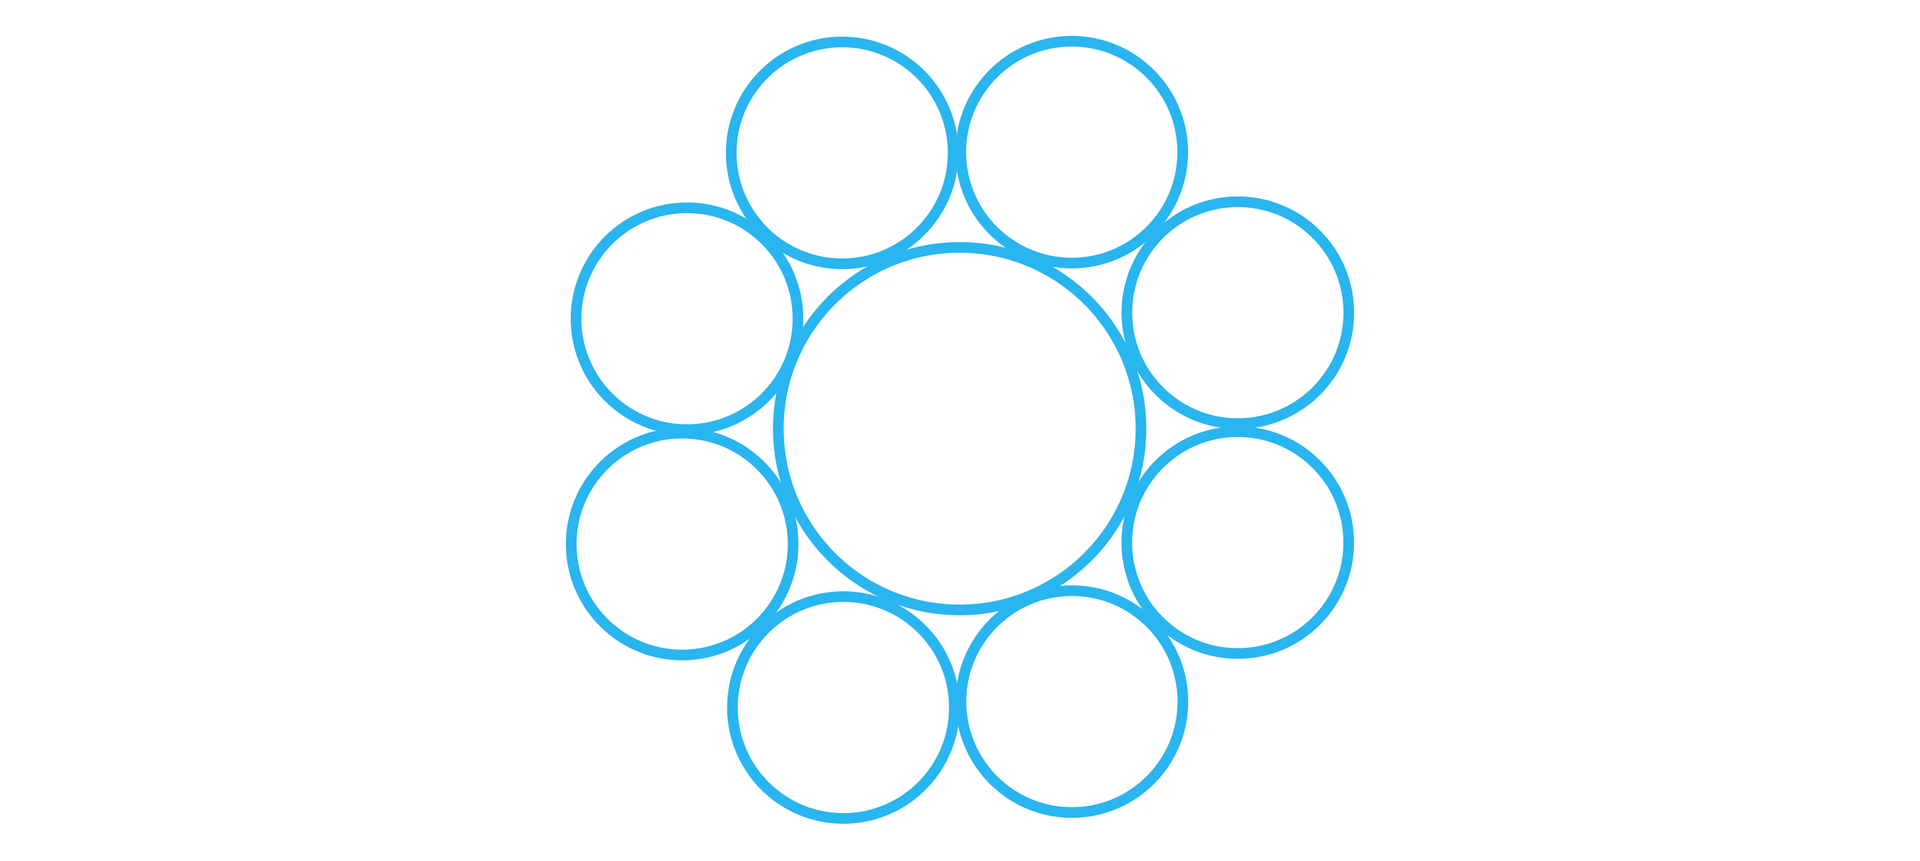 Ilustracja przedstawia duży okrąg w umiejscowiony w centrum oraz osiem mniejszych, otaczających go okręgów. Wszystkie razem układają się w uproszczony kształt kwiatka. Każdy mały okrąg ma jeden wspólny punkt z dużym okręgiem oraz po jednym punkcie wspólnym z okręgami leżącymi po jego obu stronach.